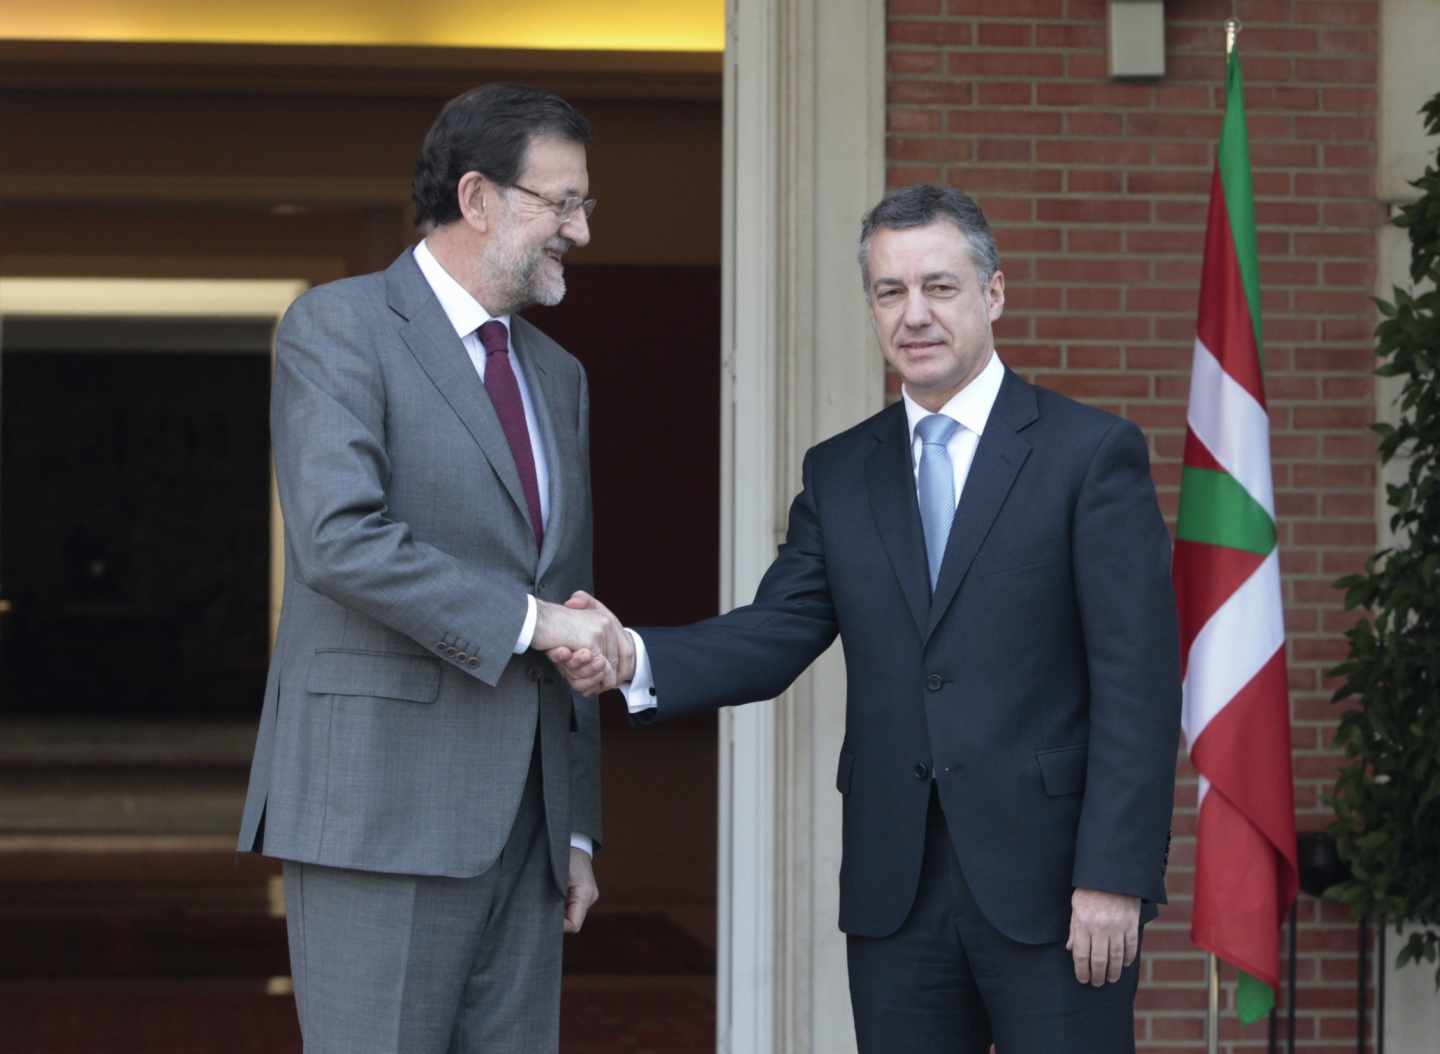 El presidente del Gobierno, Mariano Rajoy, y el lehendakari, Íñigo Urkullu.